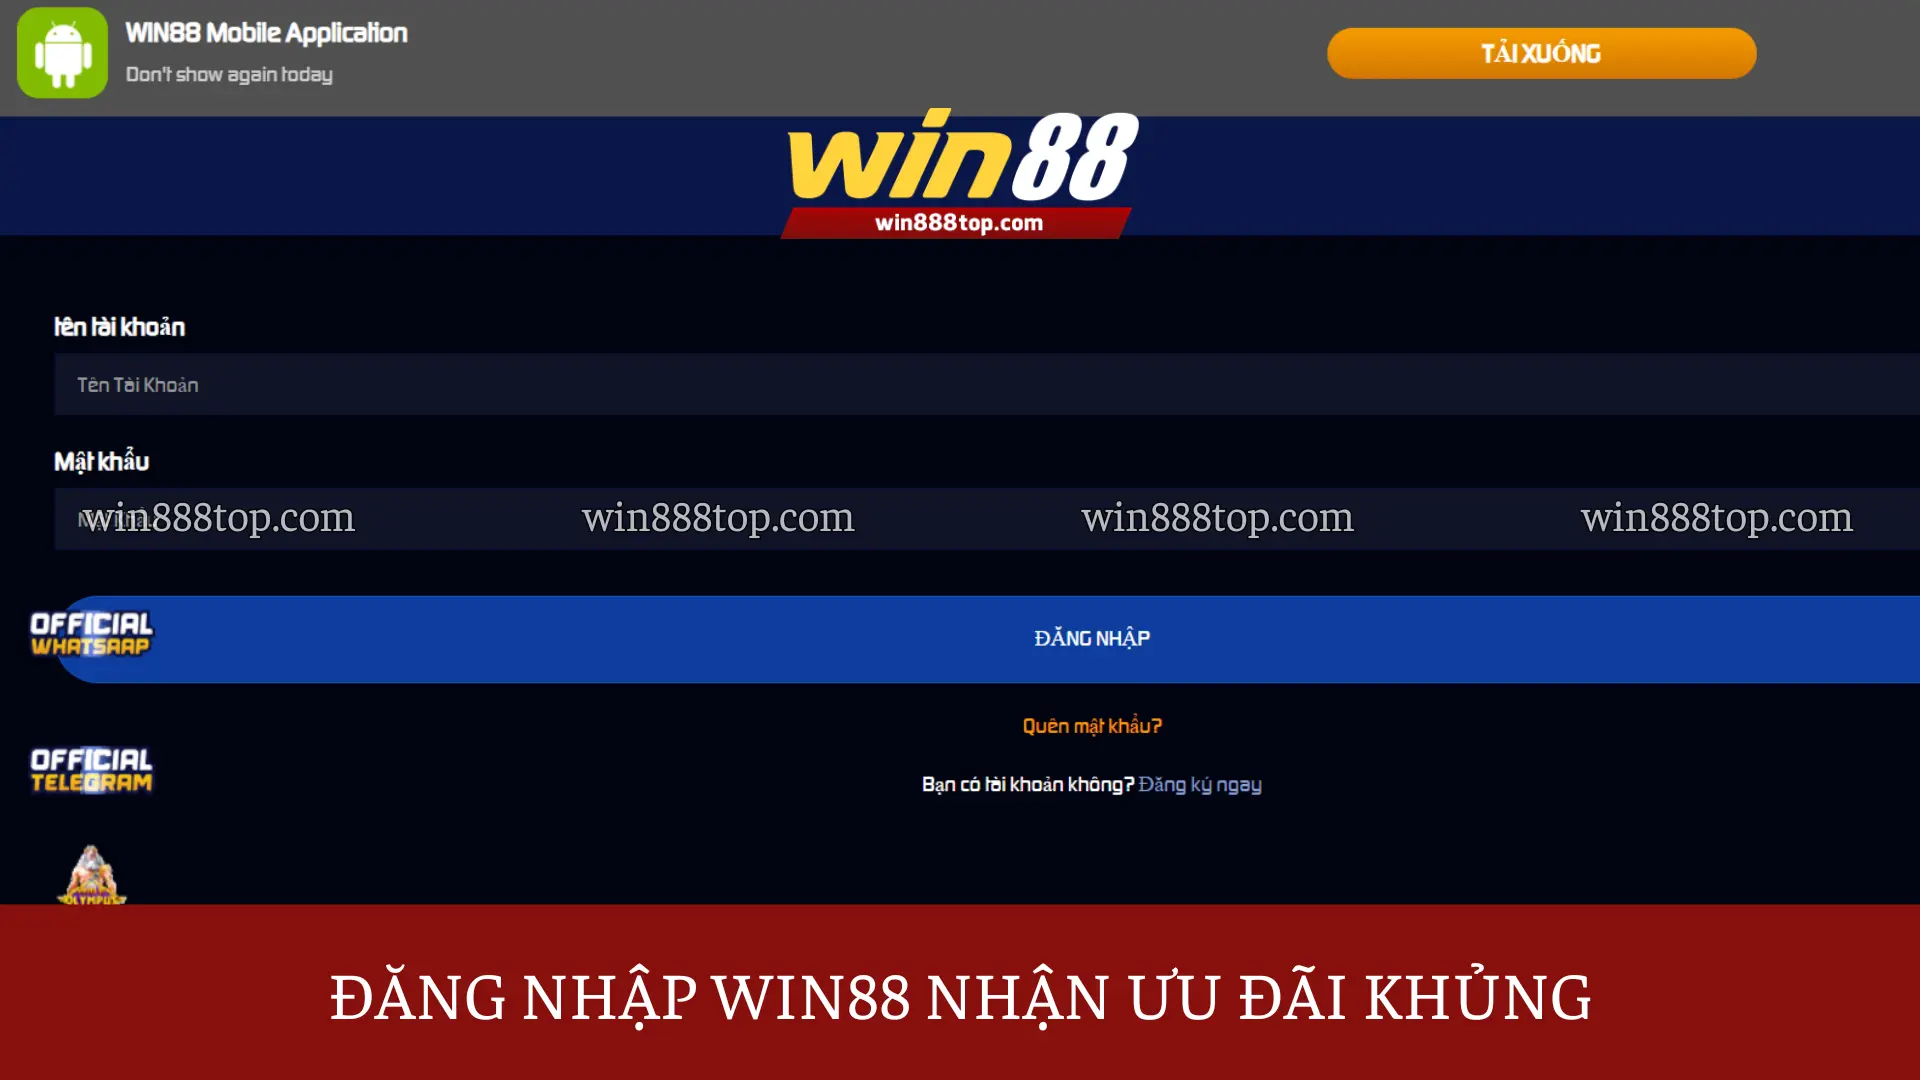 dang-nhap-win88-de-nhan-uu-dai-khung